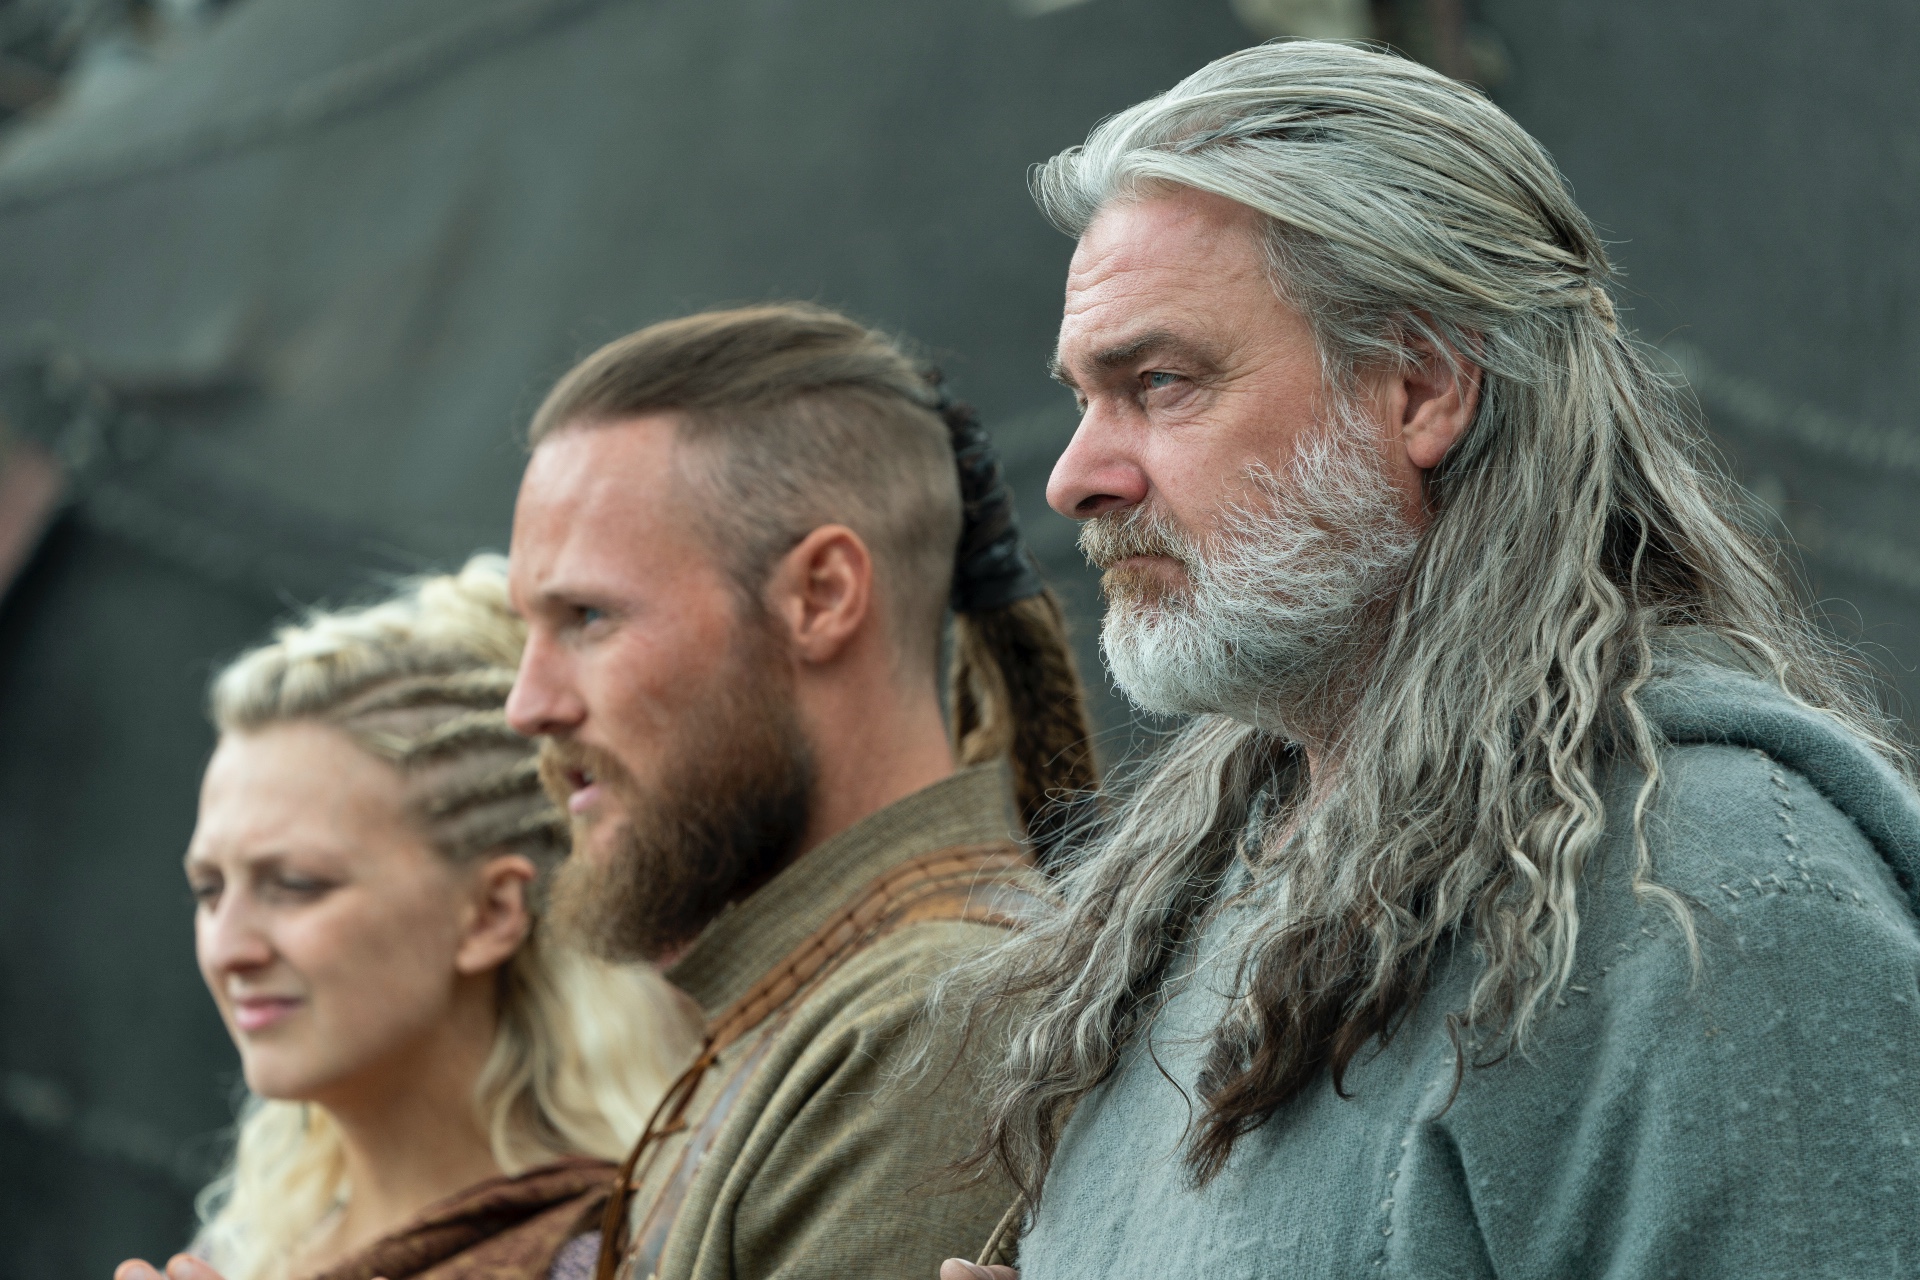 King of Kings: Bjorn's Howe in Vikings Season 6 part 2